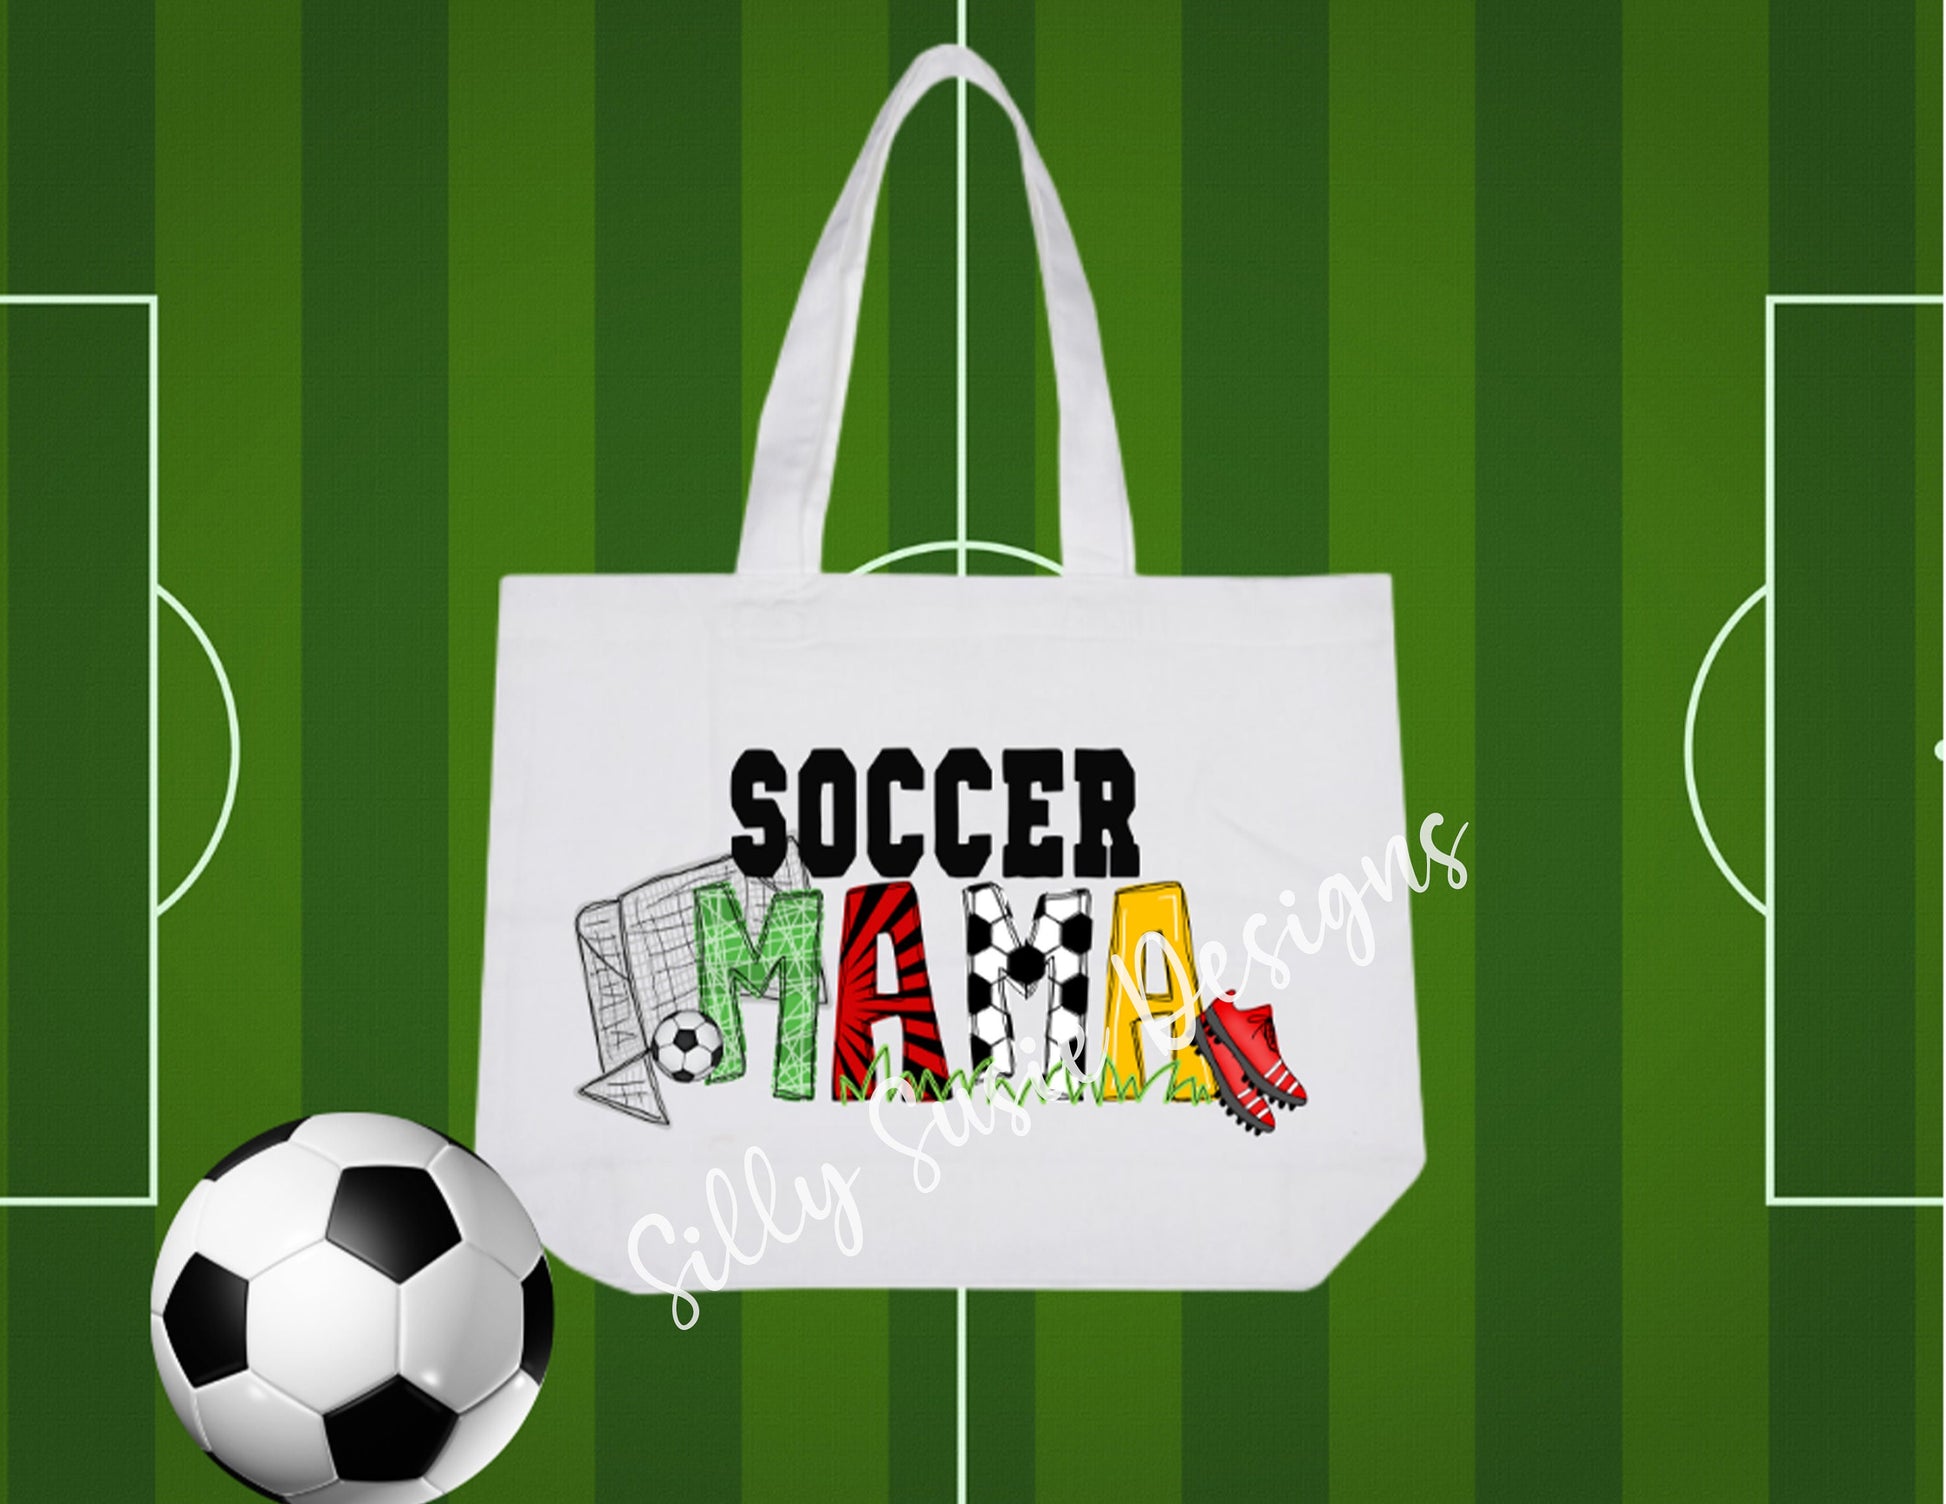 Soccer Mama Tote Bag, Soccer Tote, Soccer Snack Tote, Soccer Mom Gift, Tote for Mom, Tote Bag